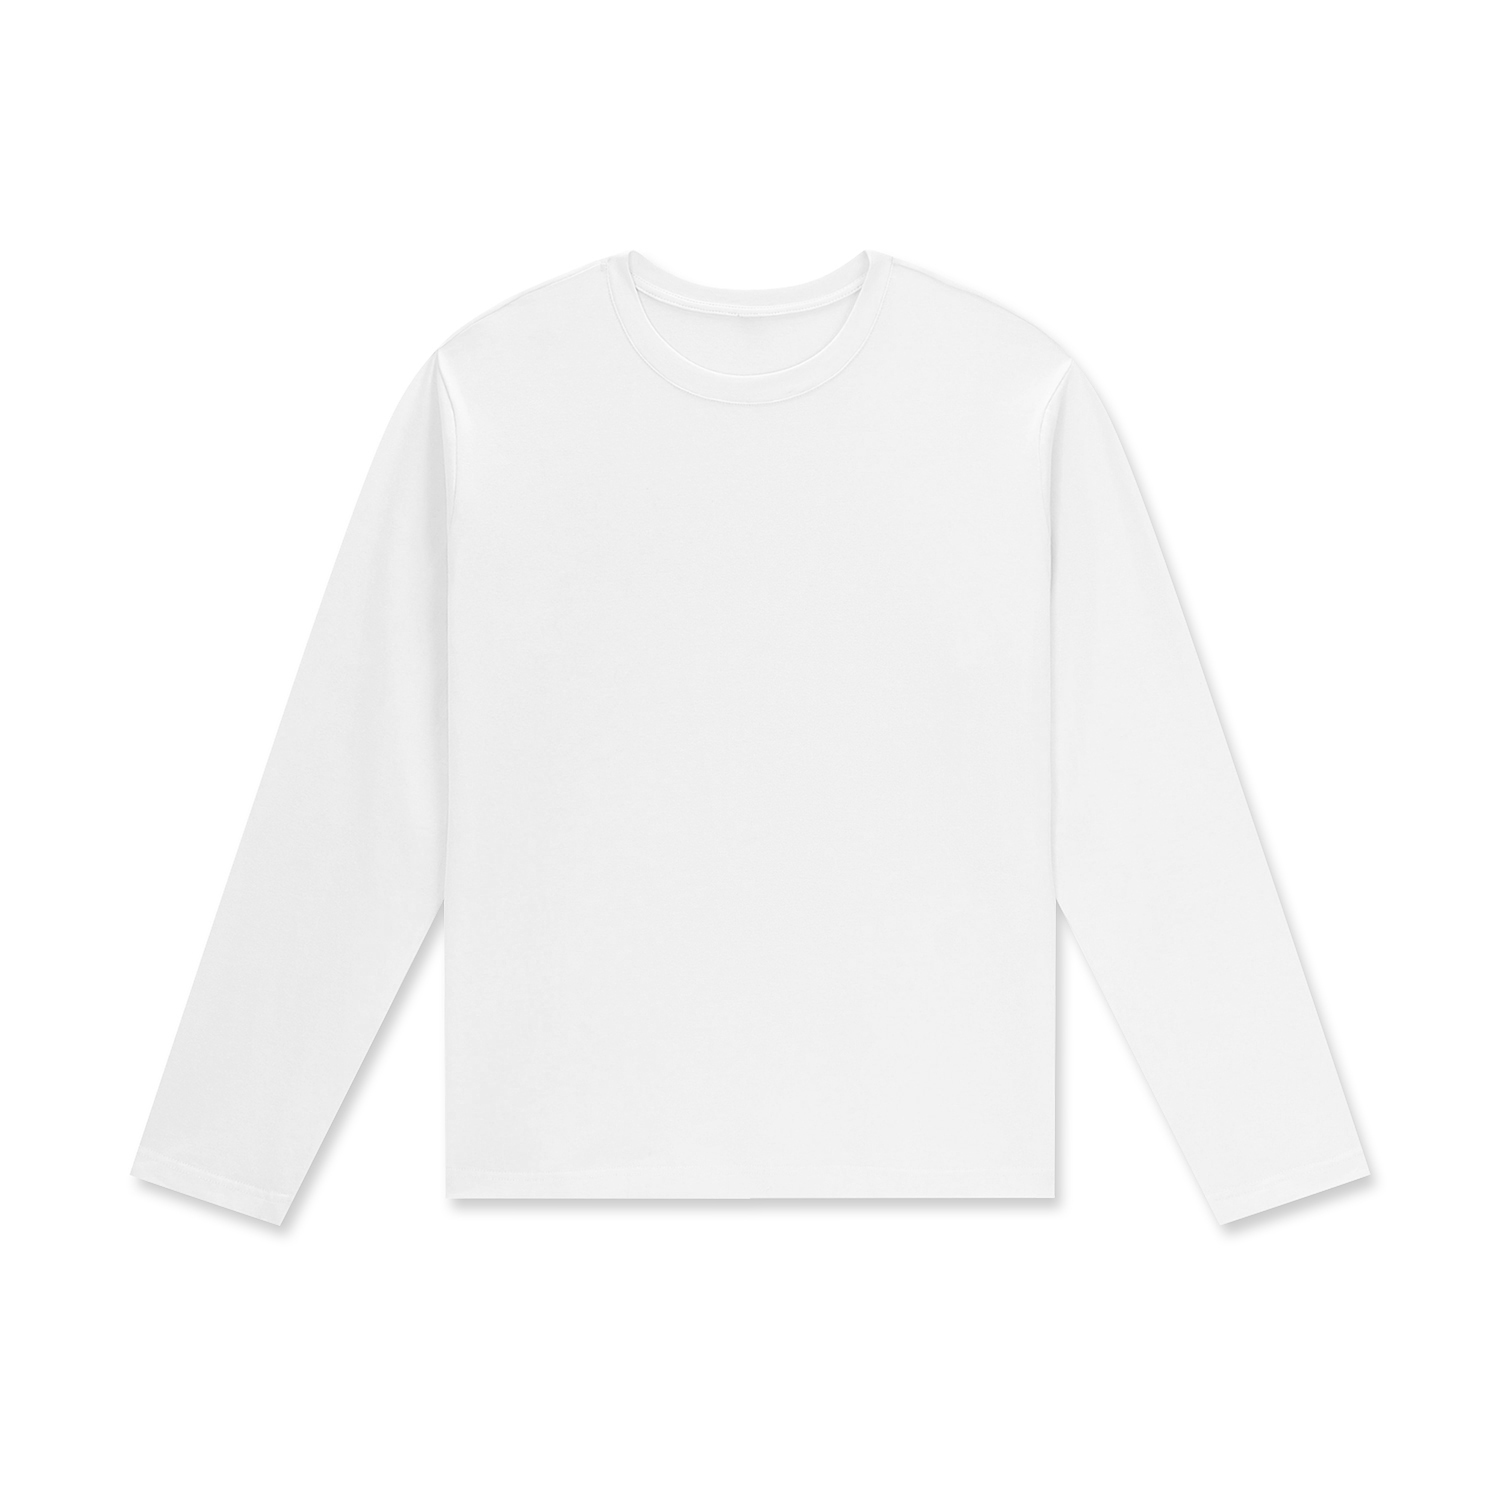 Unisex Staple Long Sleeve Cotton T-Shirt | HugePOD-1